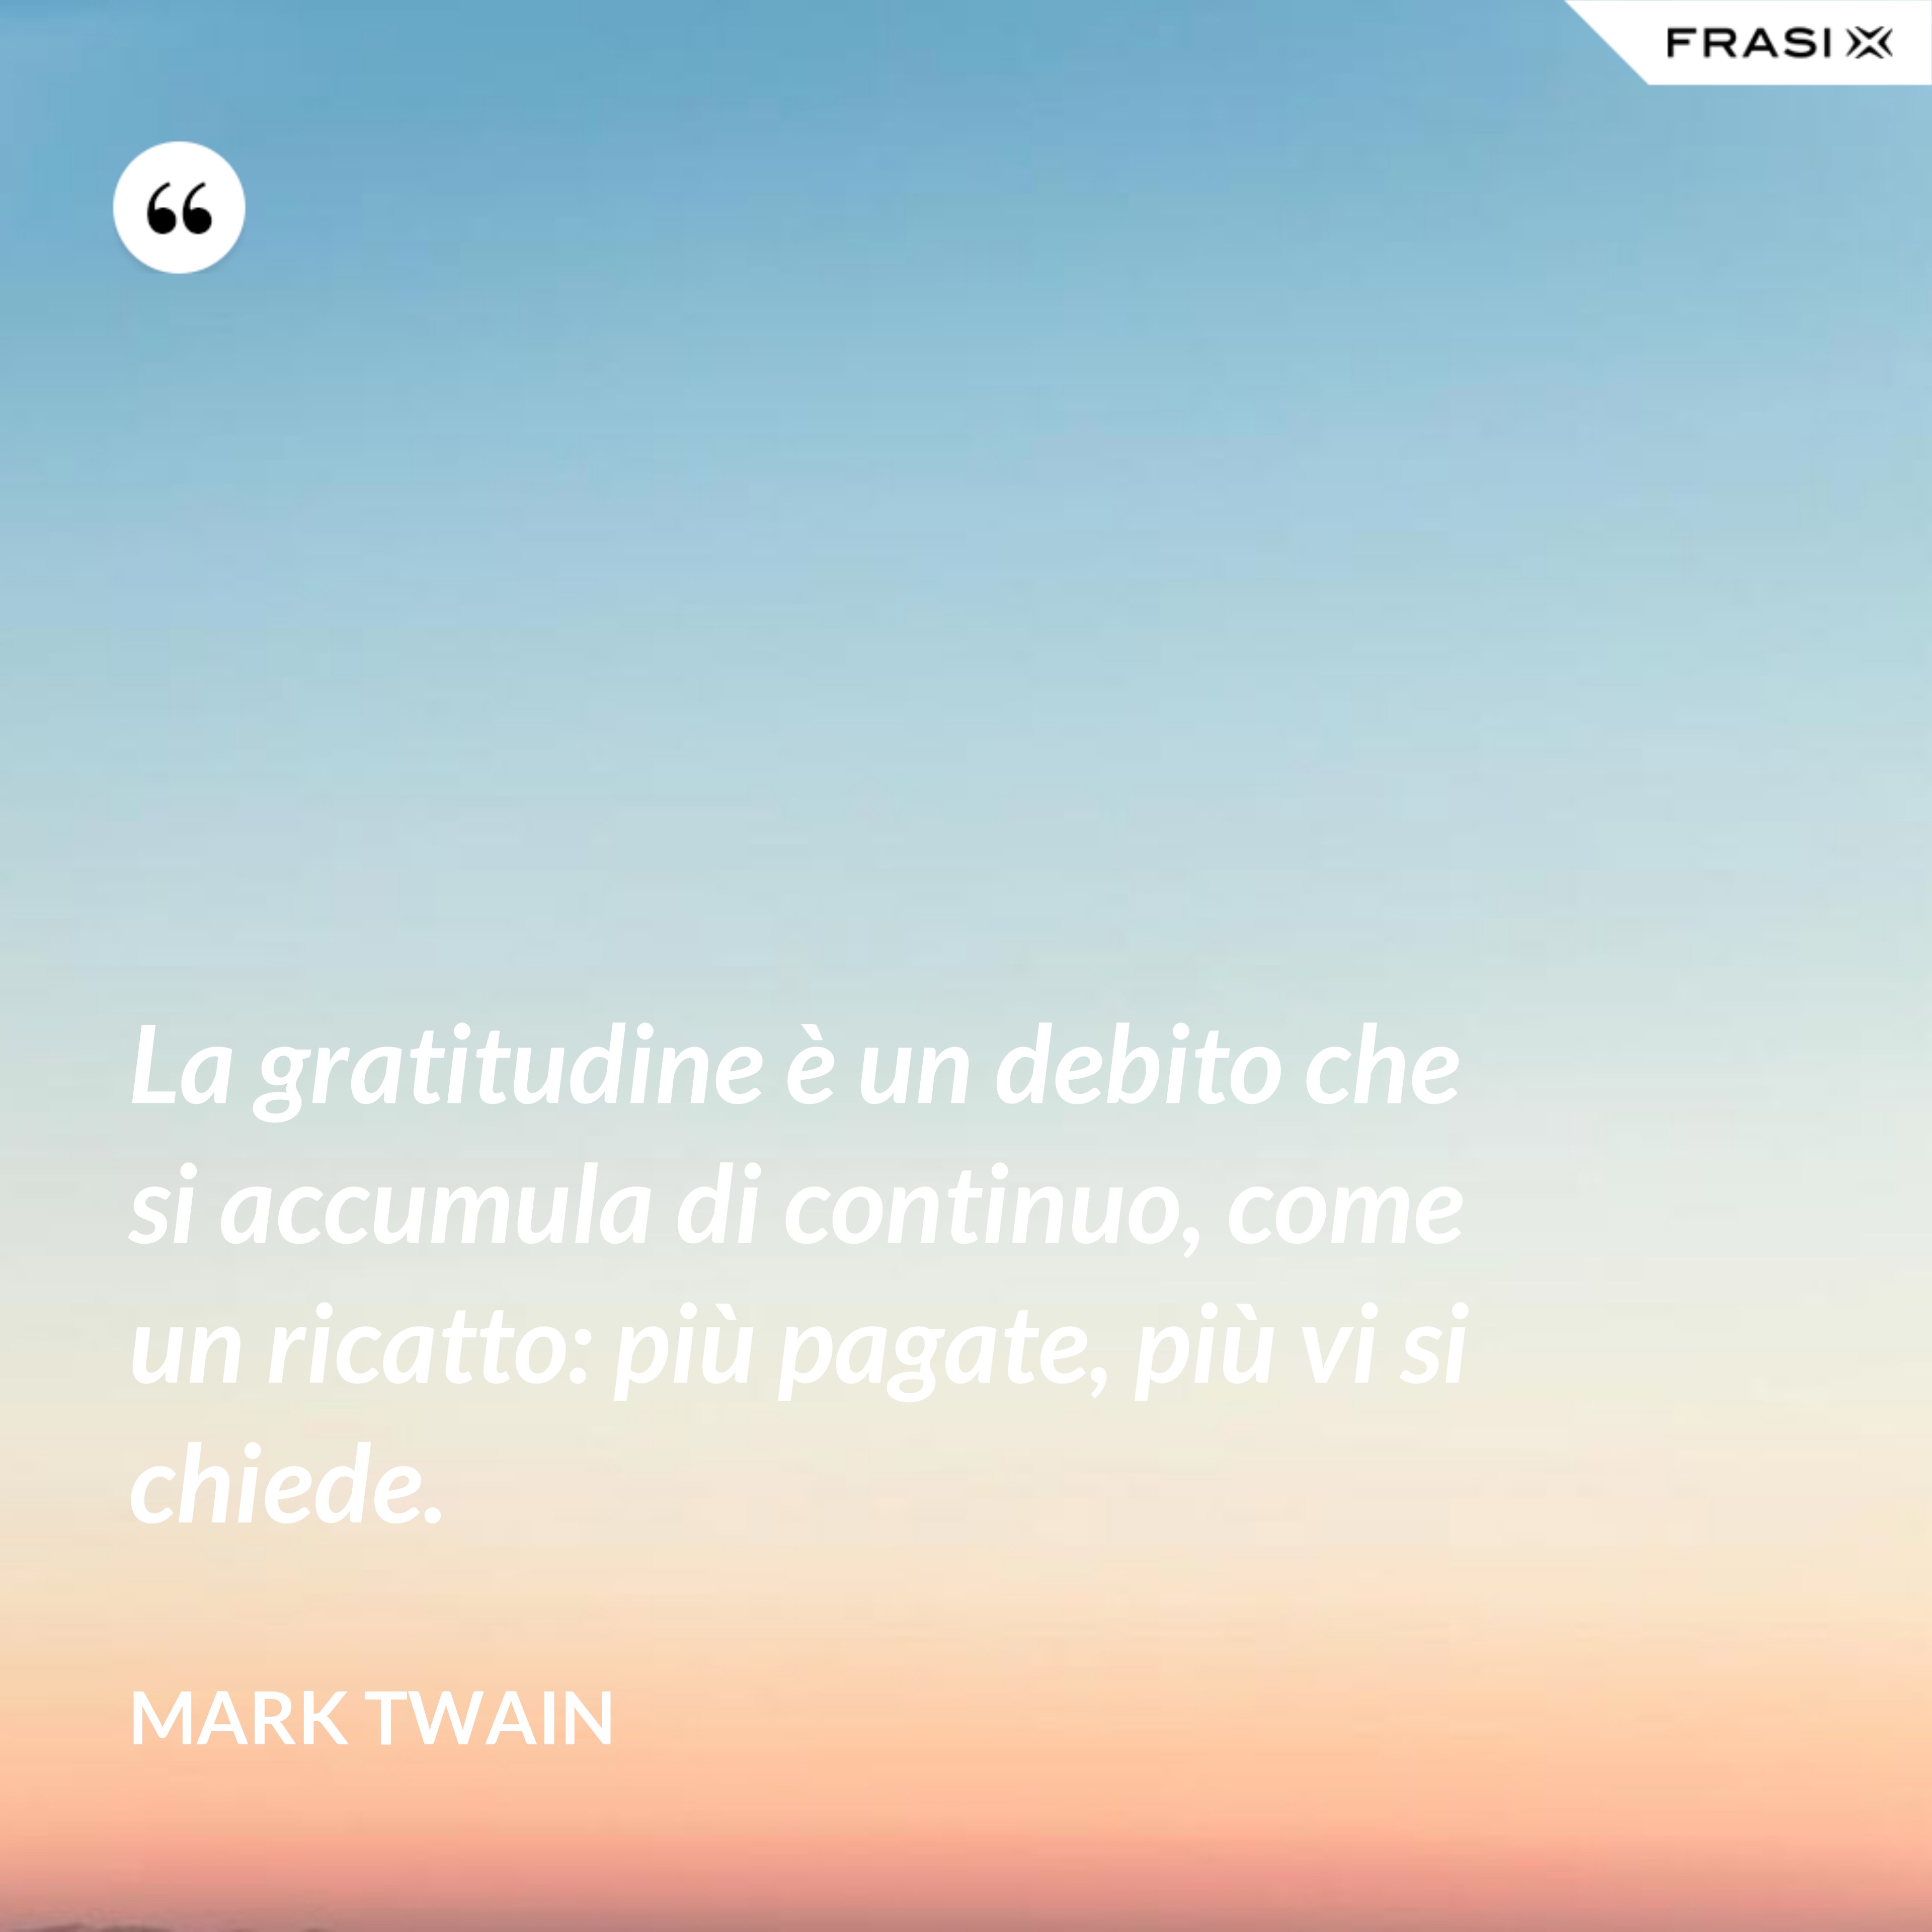 La gratitudine è un debito che si accumula di continuo, come un ricatto: più pagate, più vi si chiede. - Mark Twain